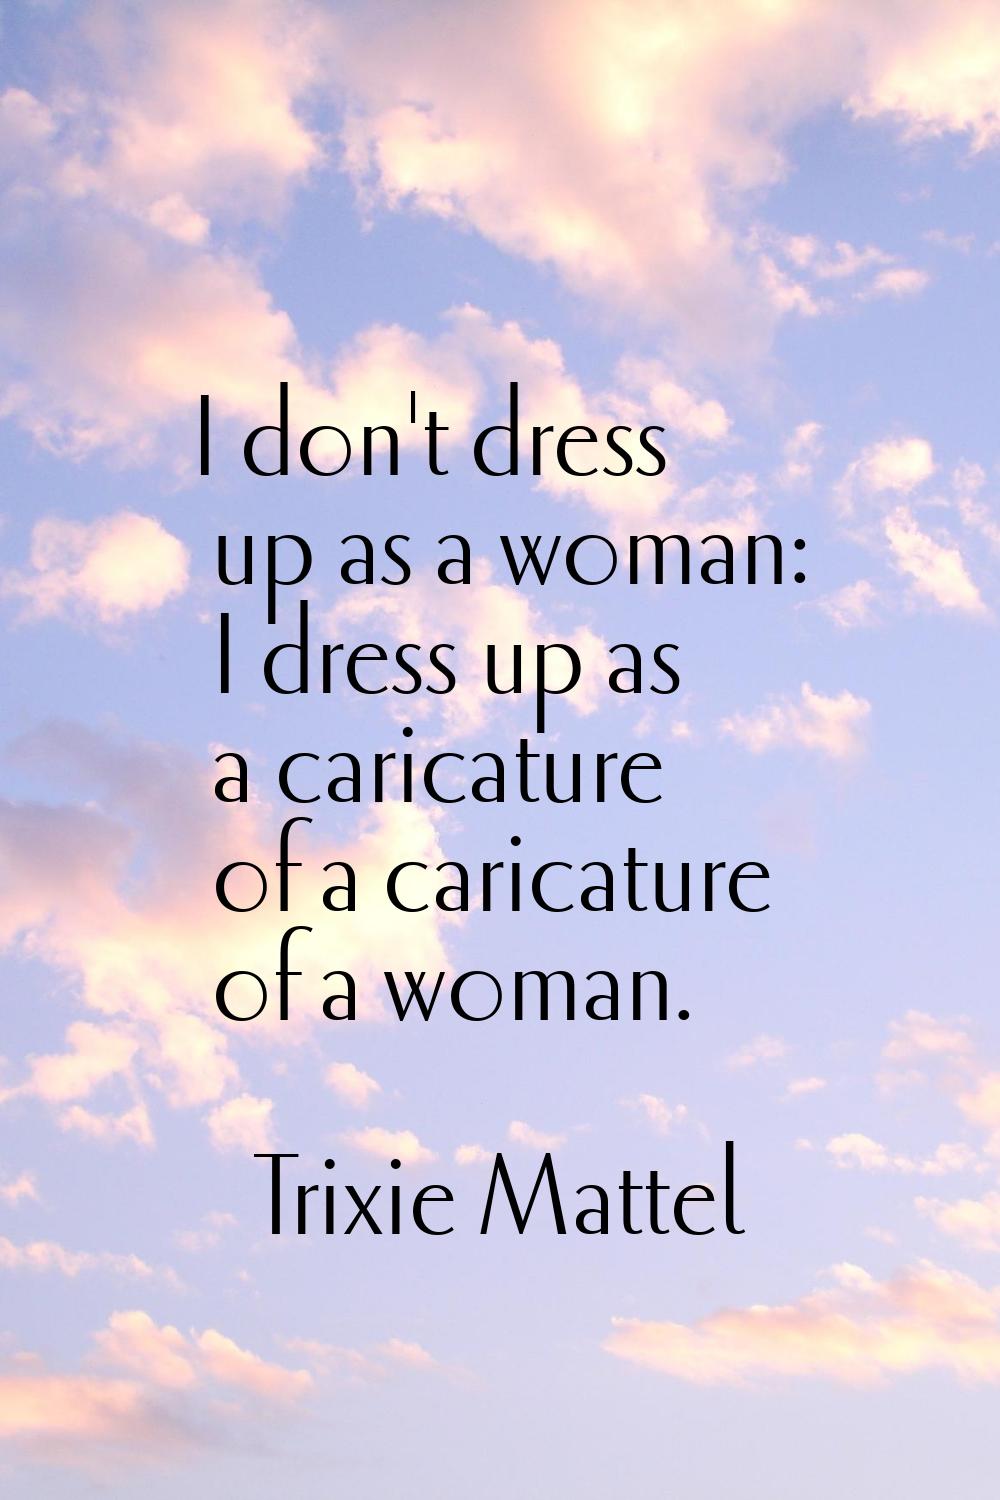 I don't dress up as a woman: I dress up as a caricature of a caricature of a woman.